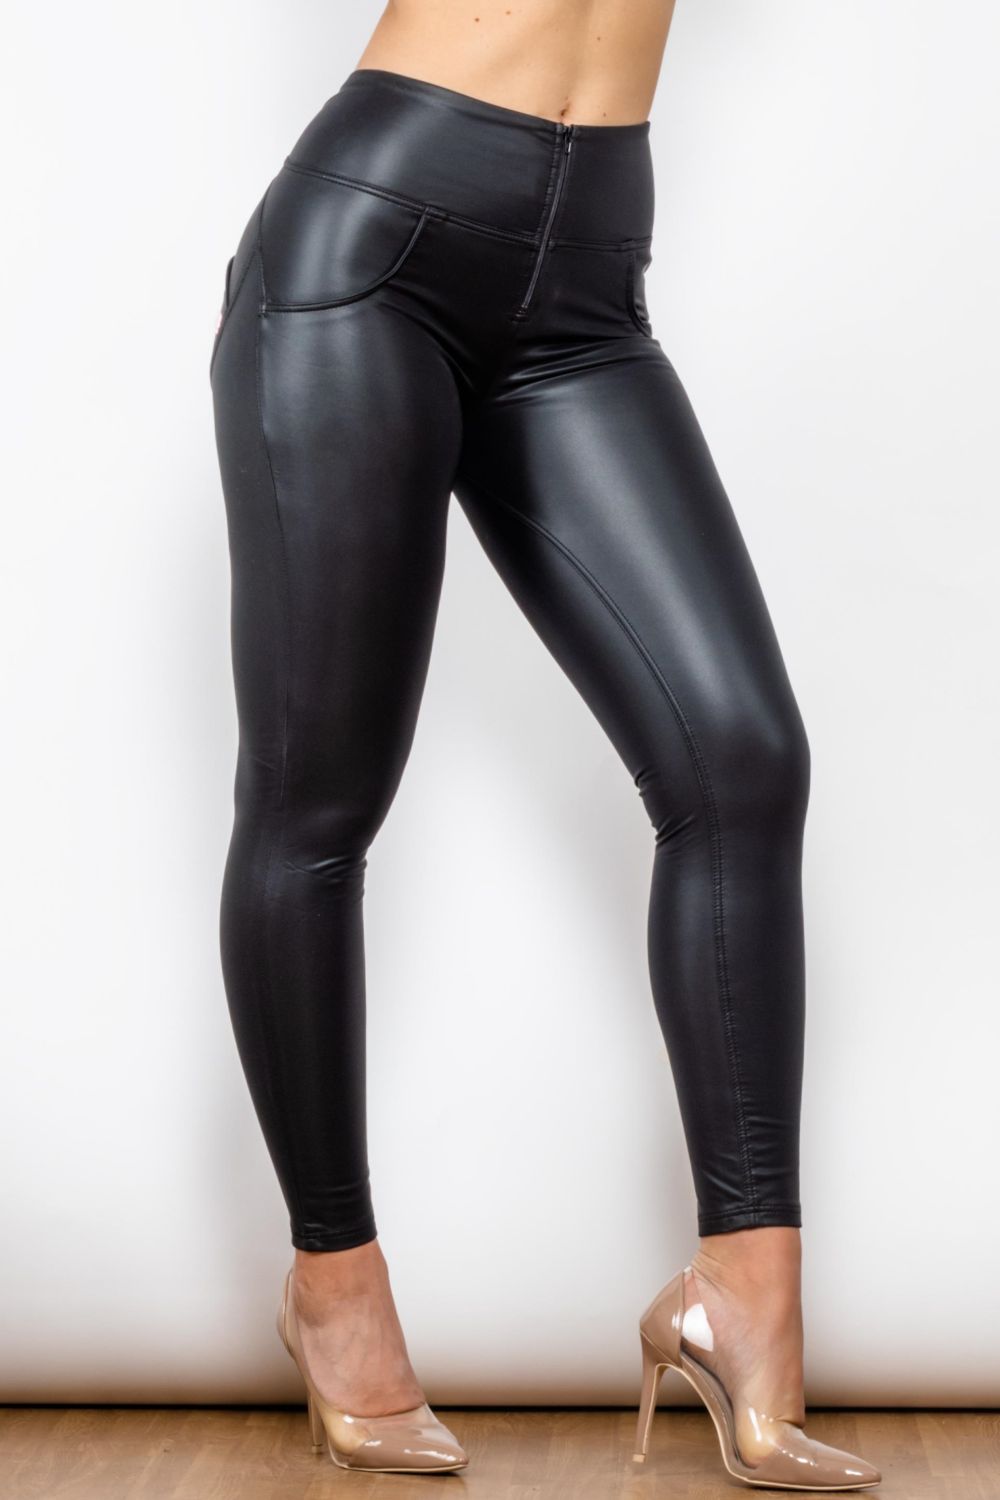 Women's Backin' It Up Faux Leather Leggings in Black Size Xs by Fashion Nova